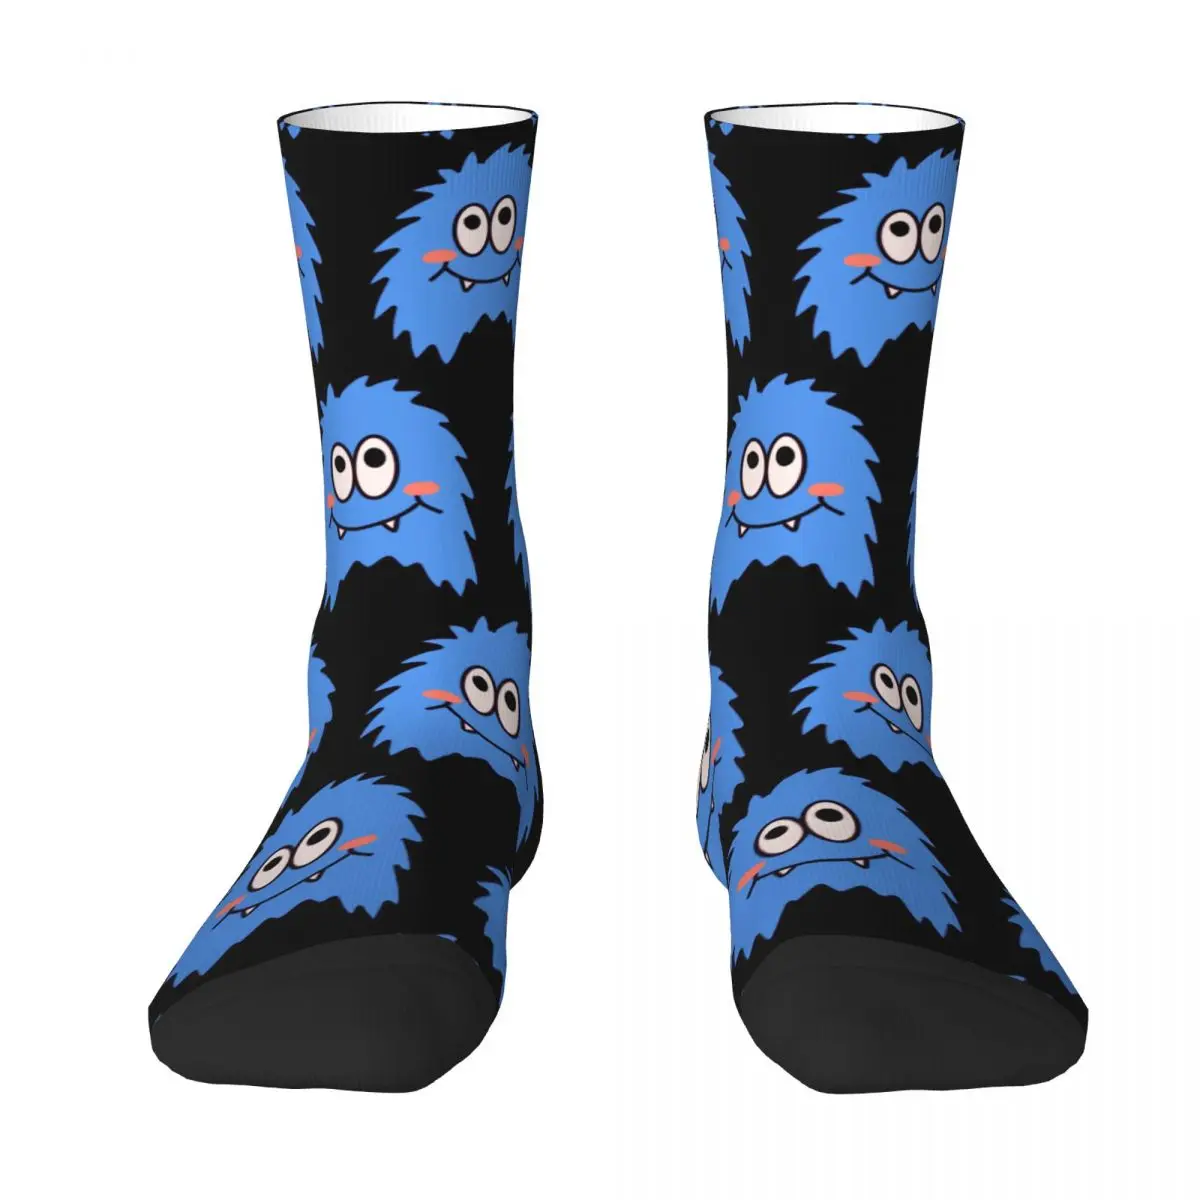 Cute Monster Adult Socks cartoon Unisex socks,men Socks women Socks